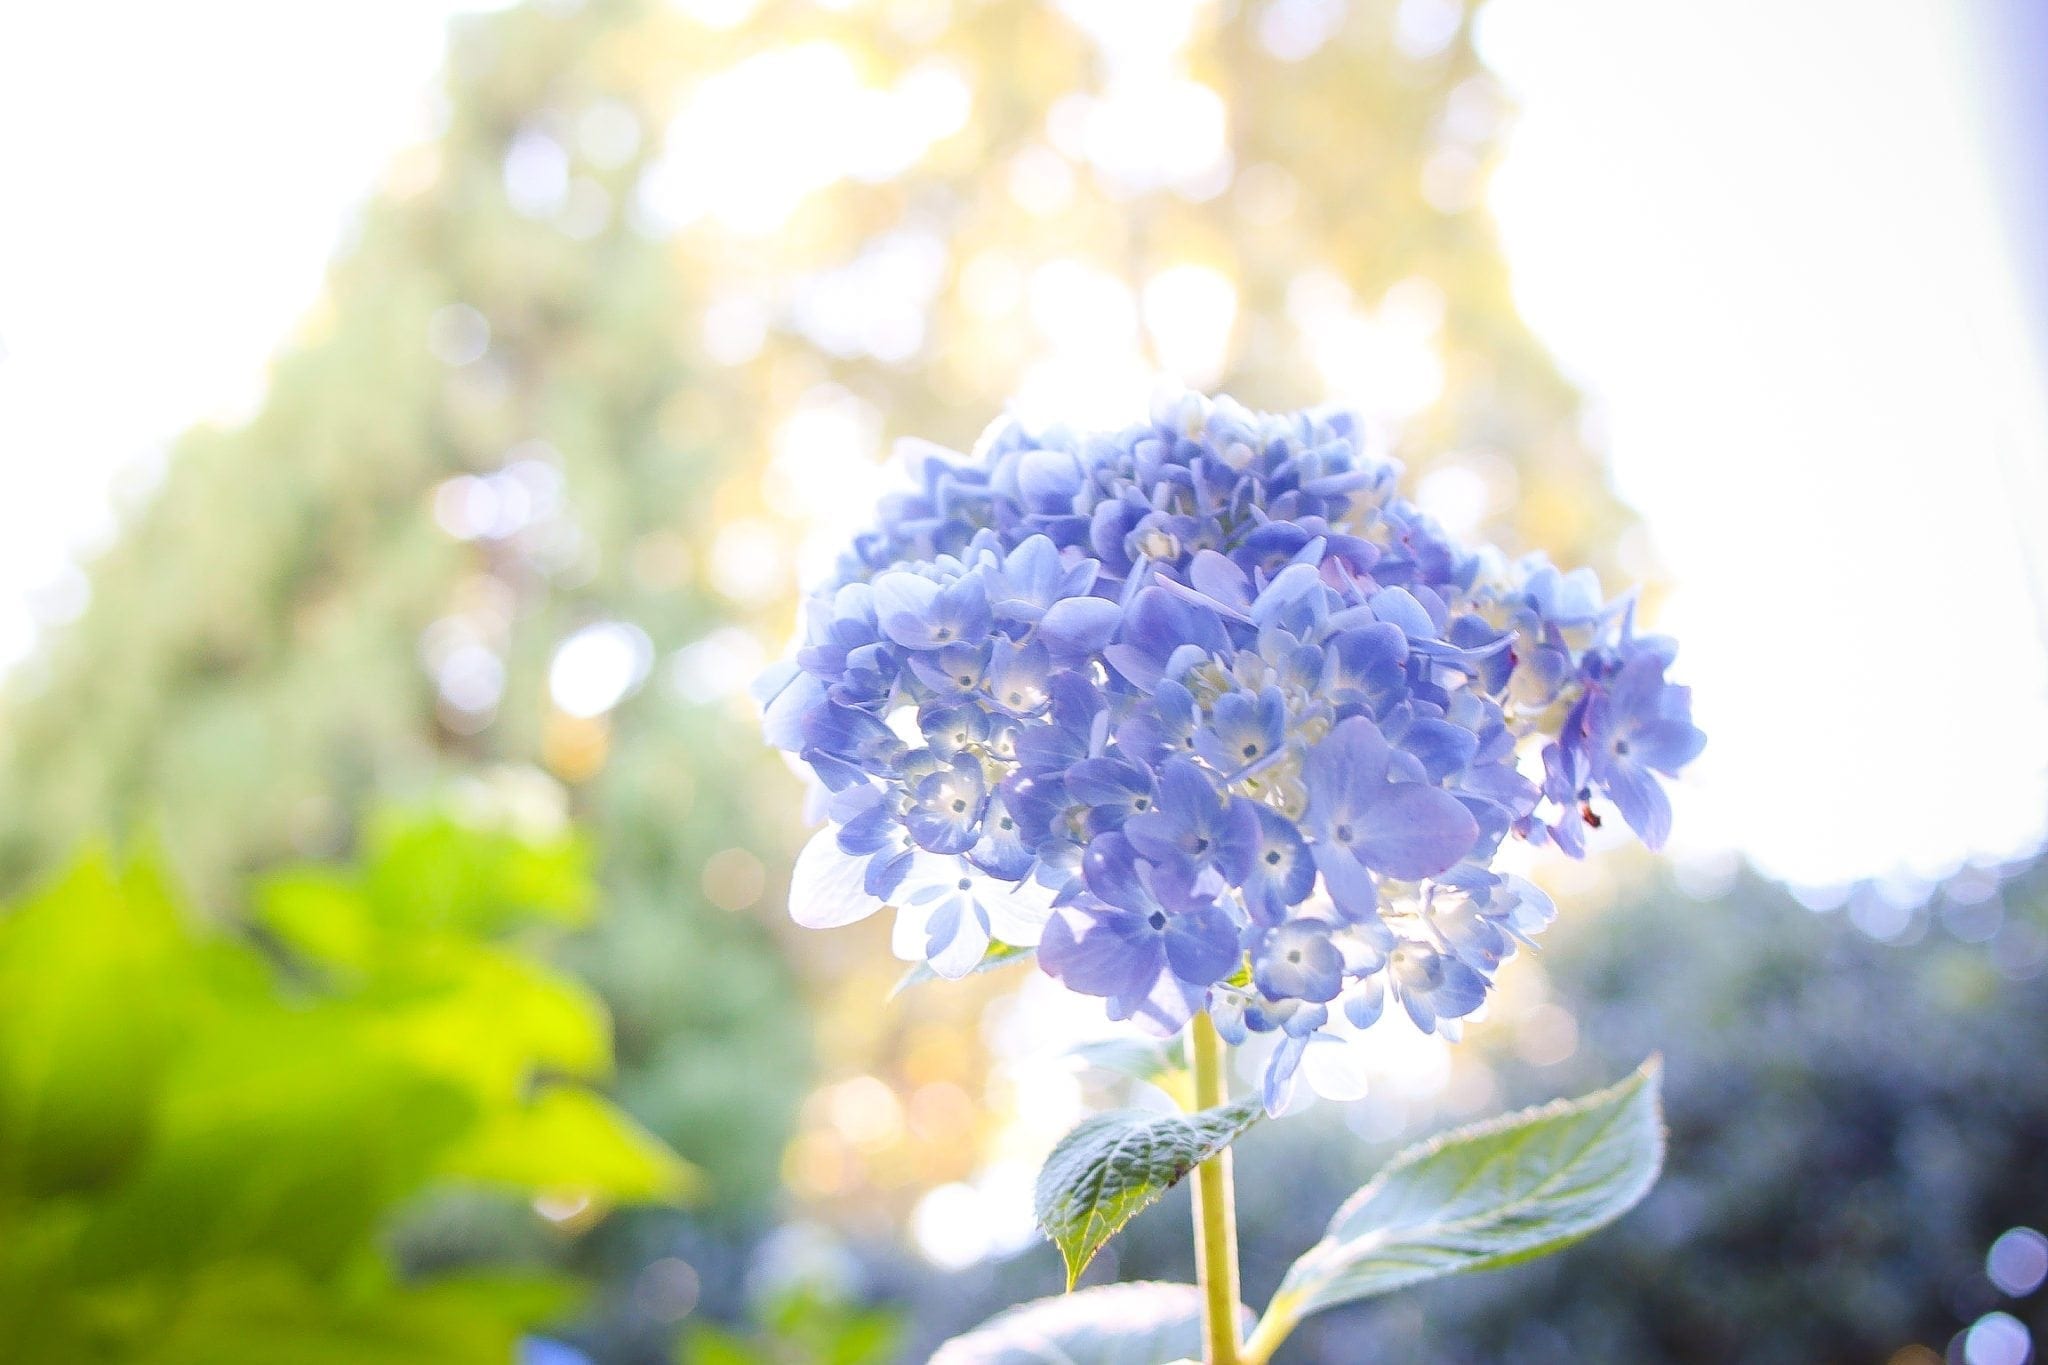 Endless Summer blue hydrangea blooms.